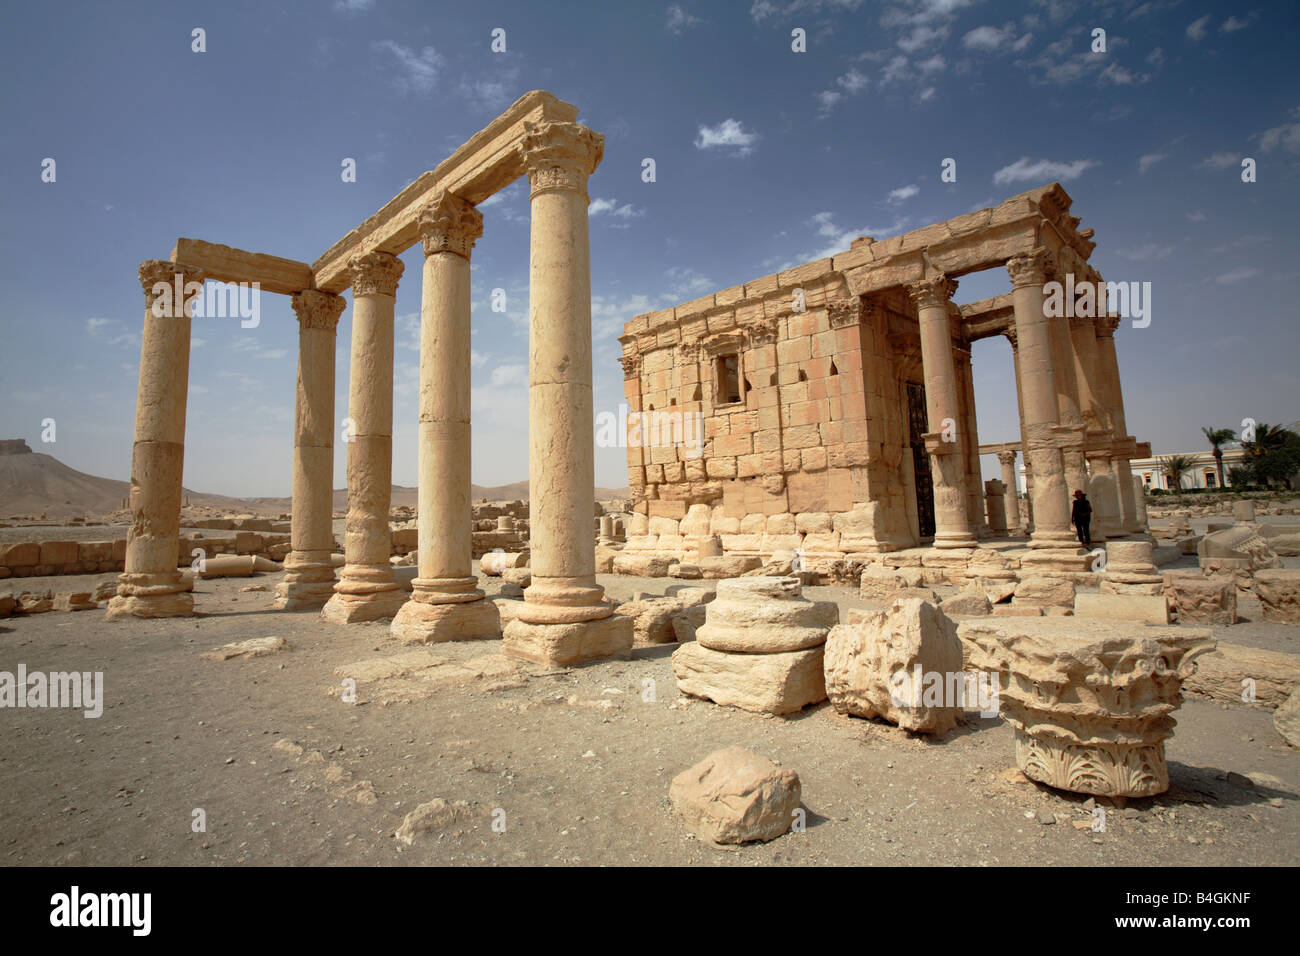 Temple of Baal Shamin, Palmyra, Syria Stock Photo